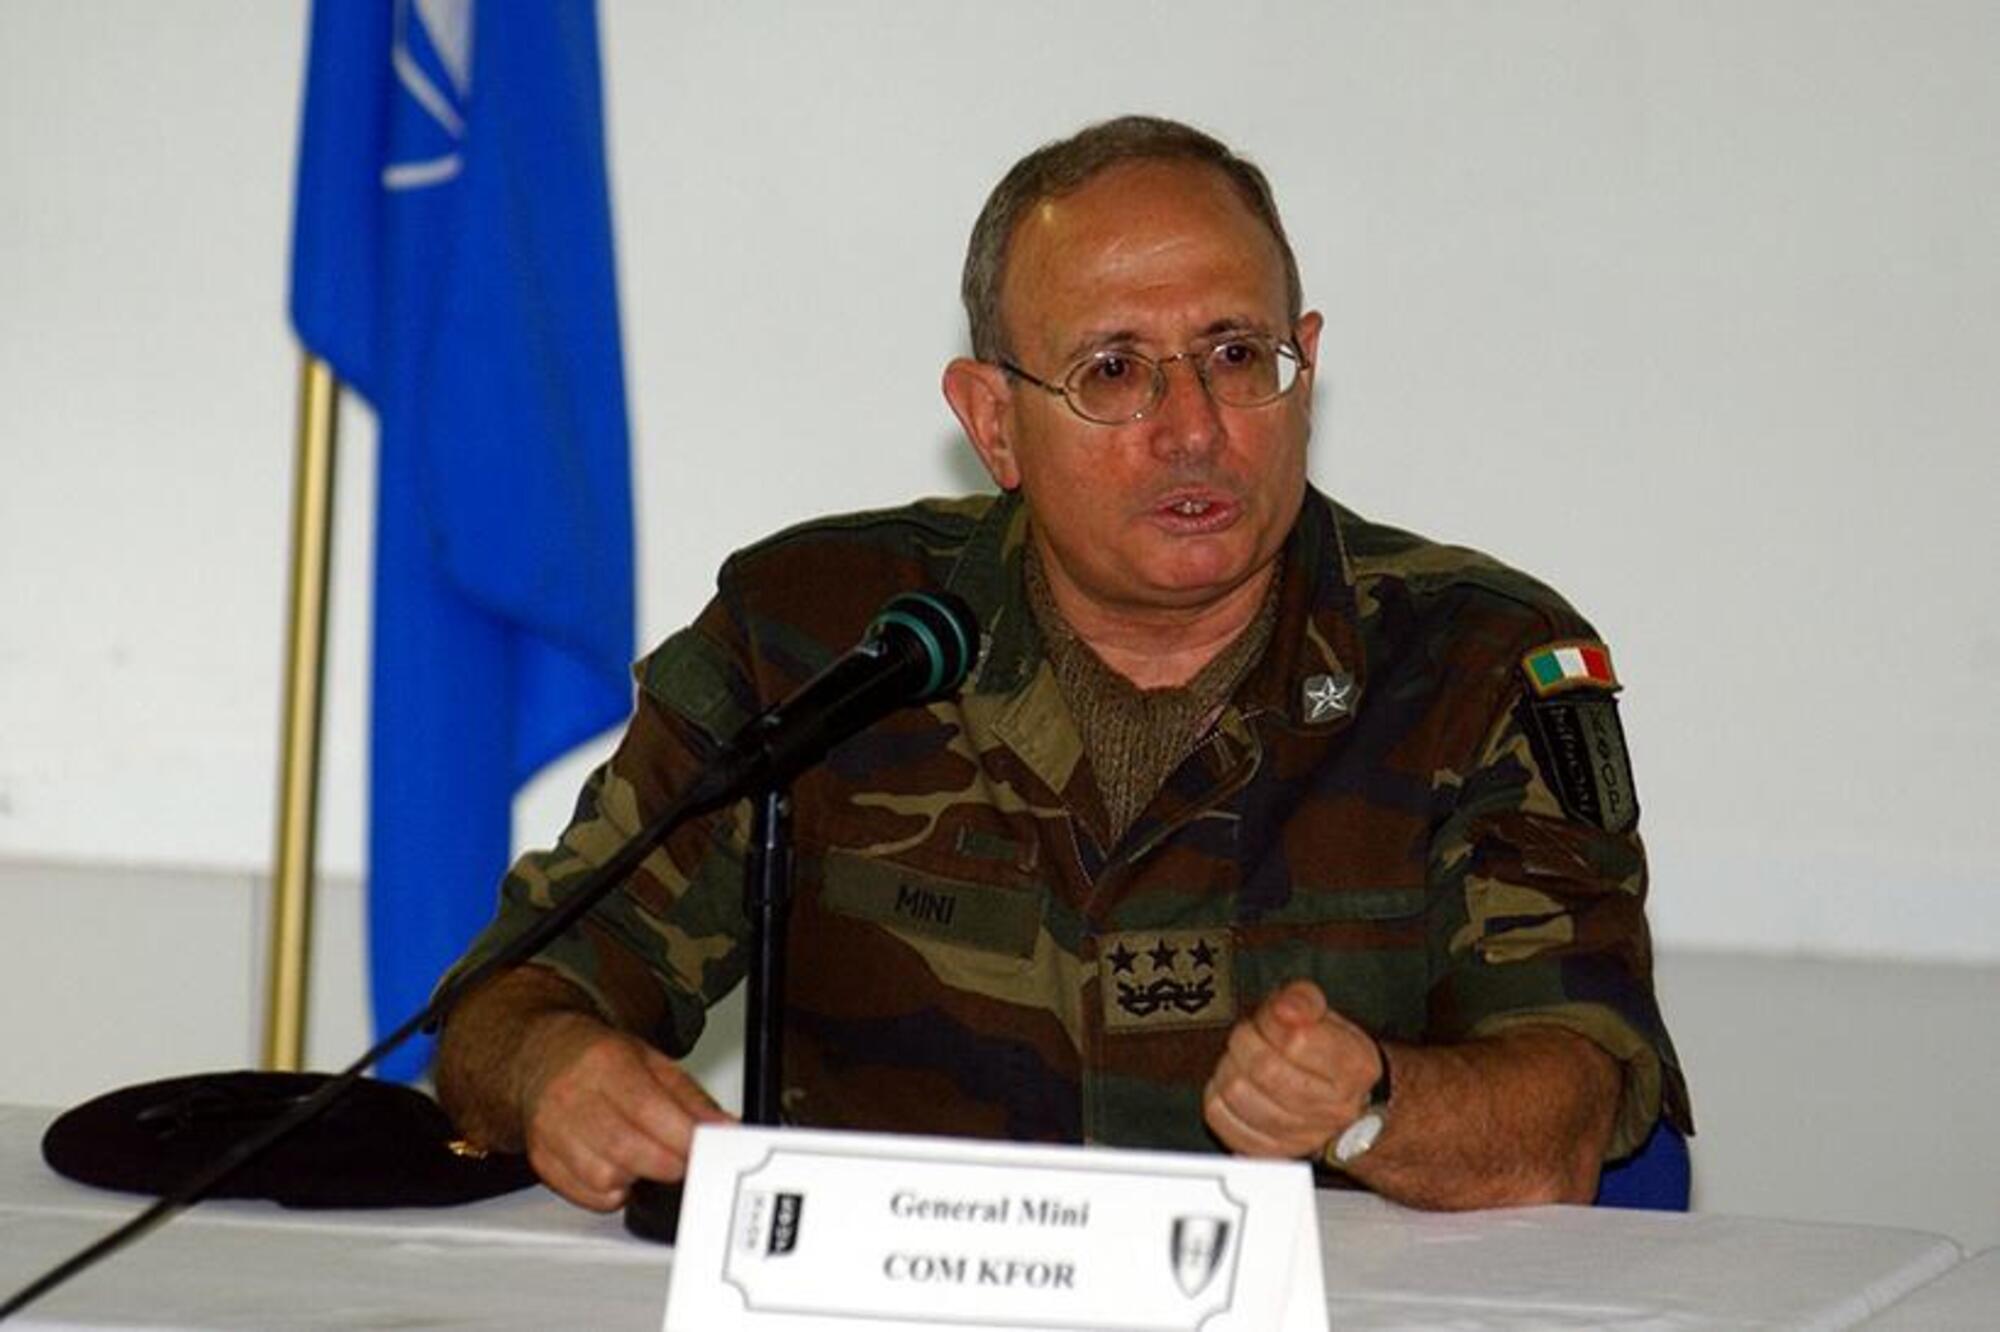 Il generale Fabio Mini